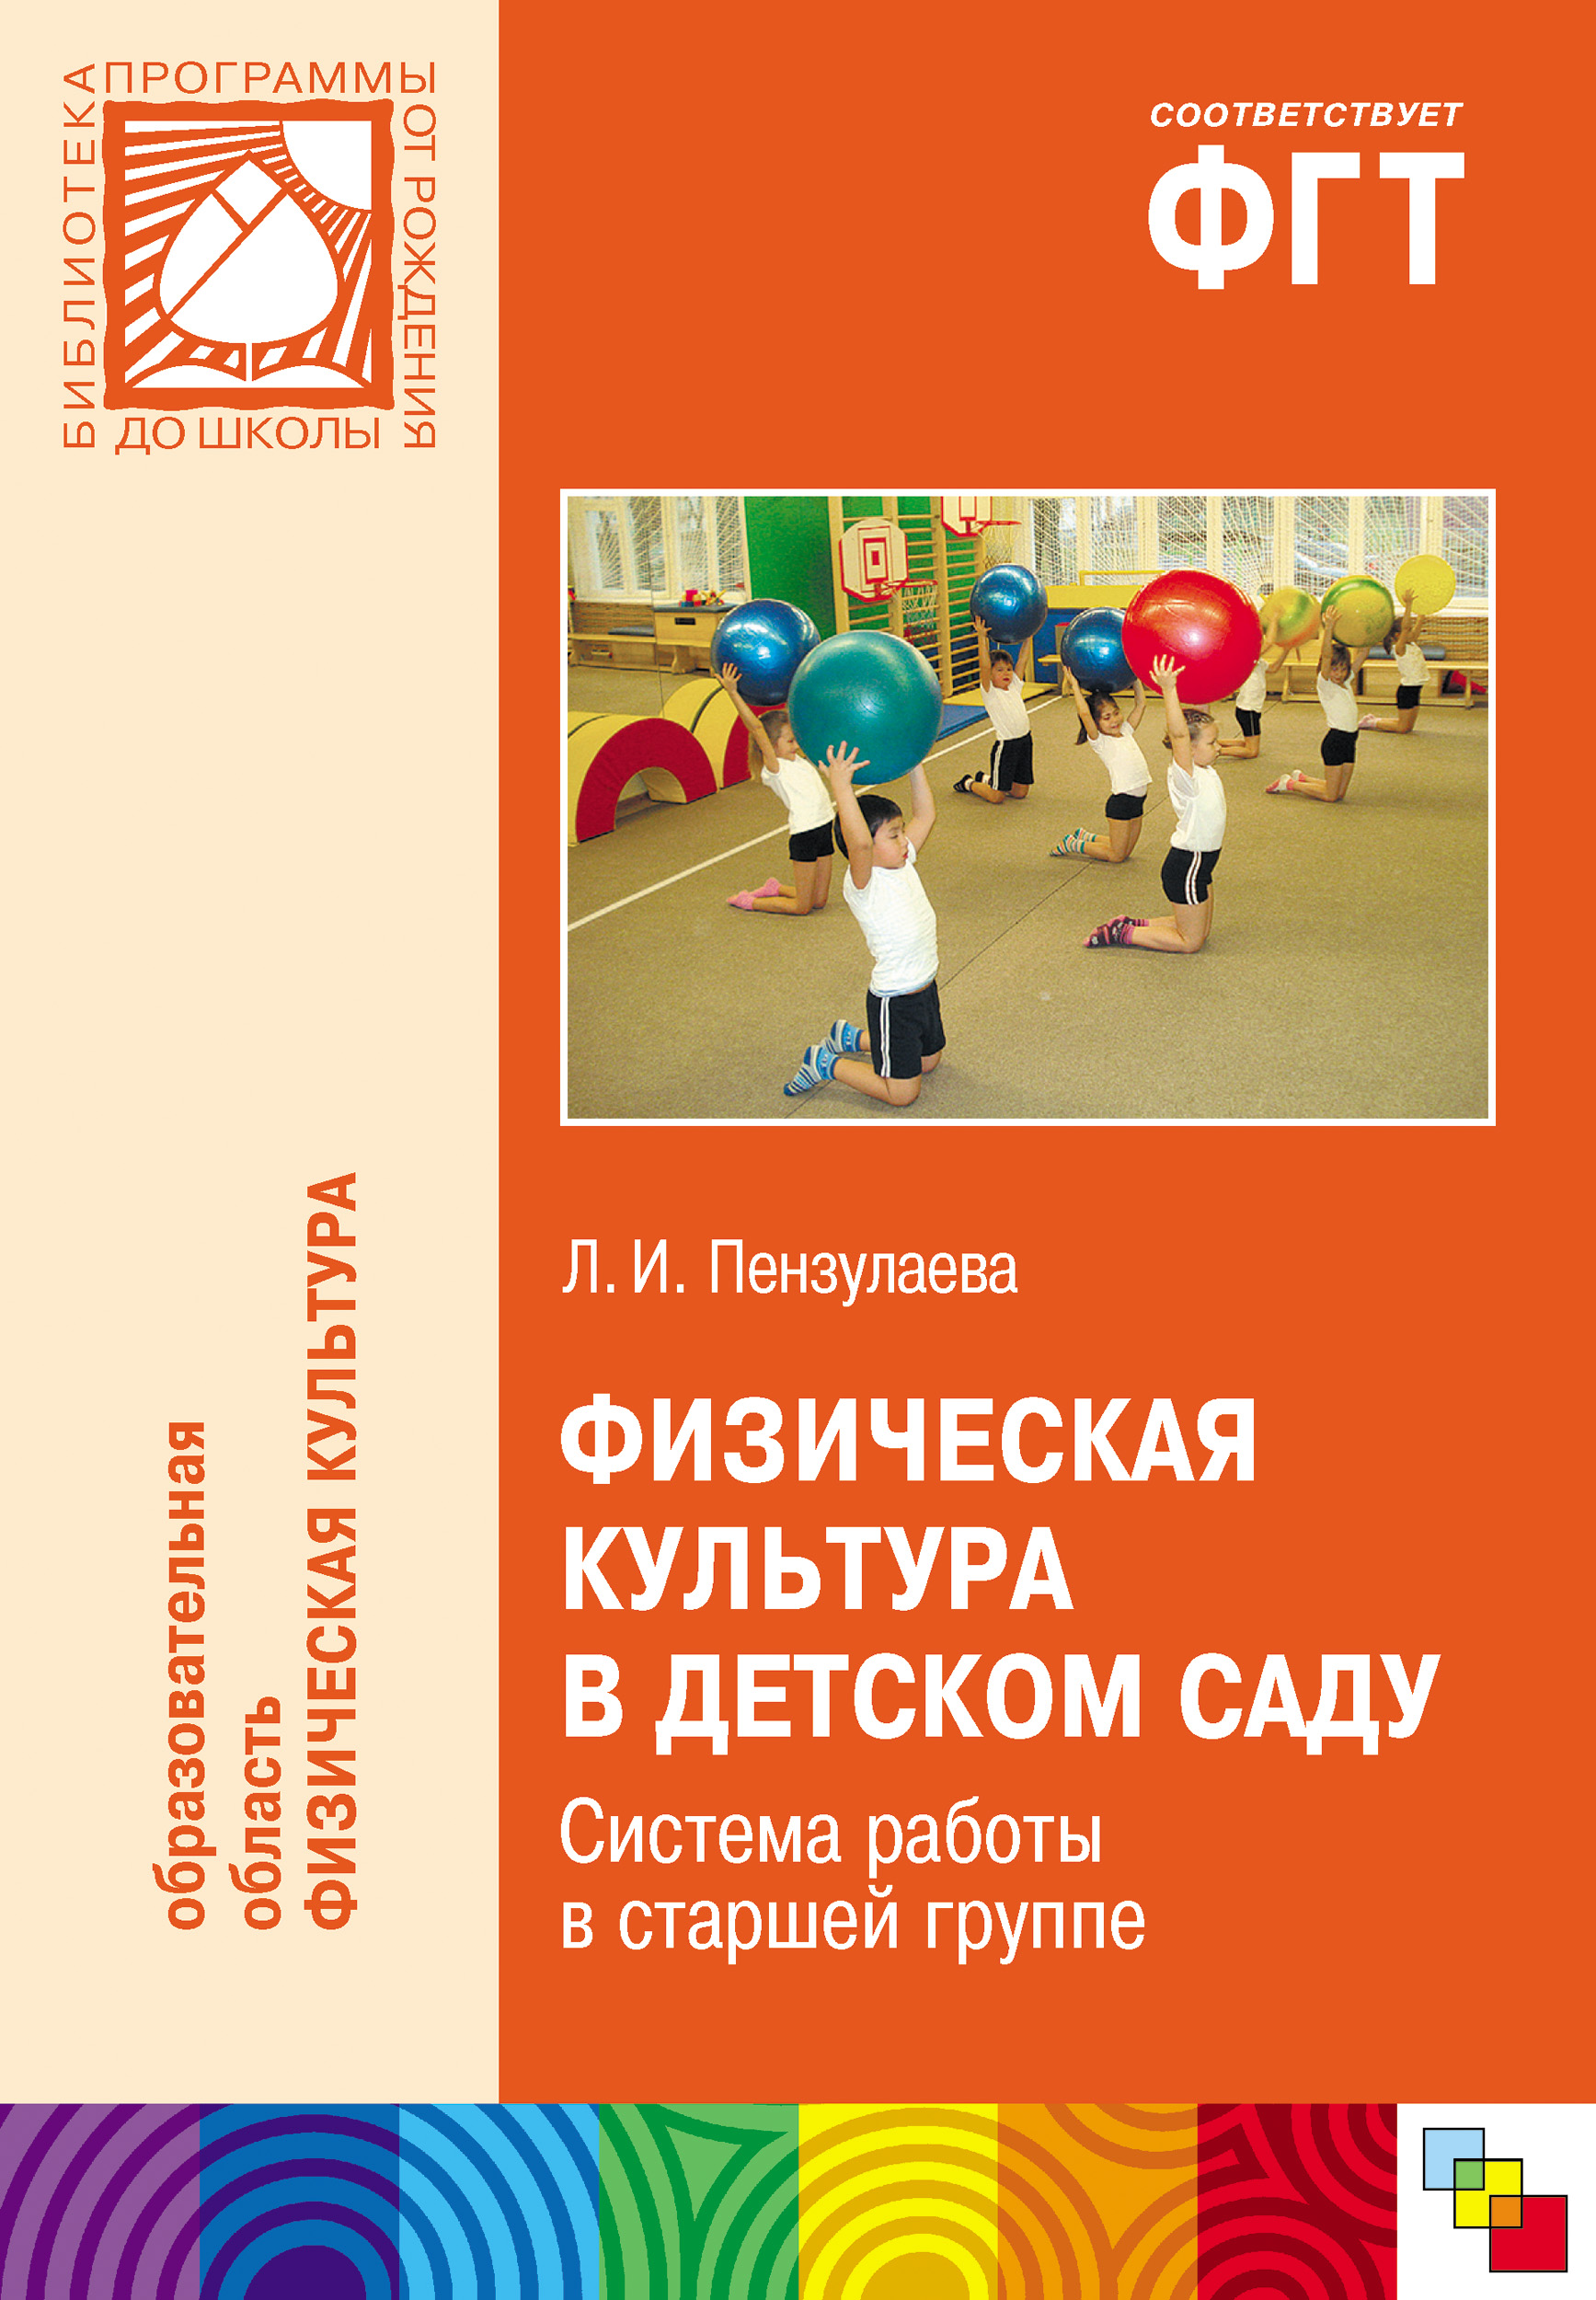 Проект по физической культуре в детском саду